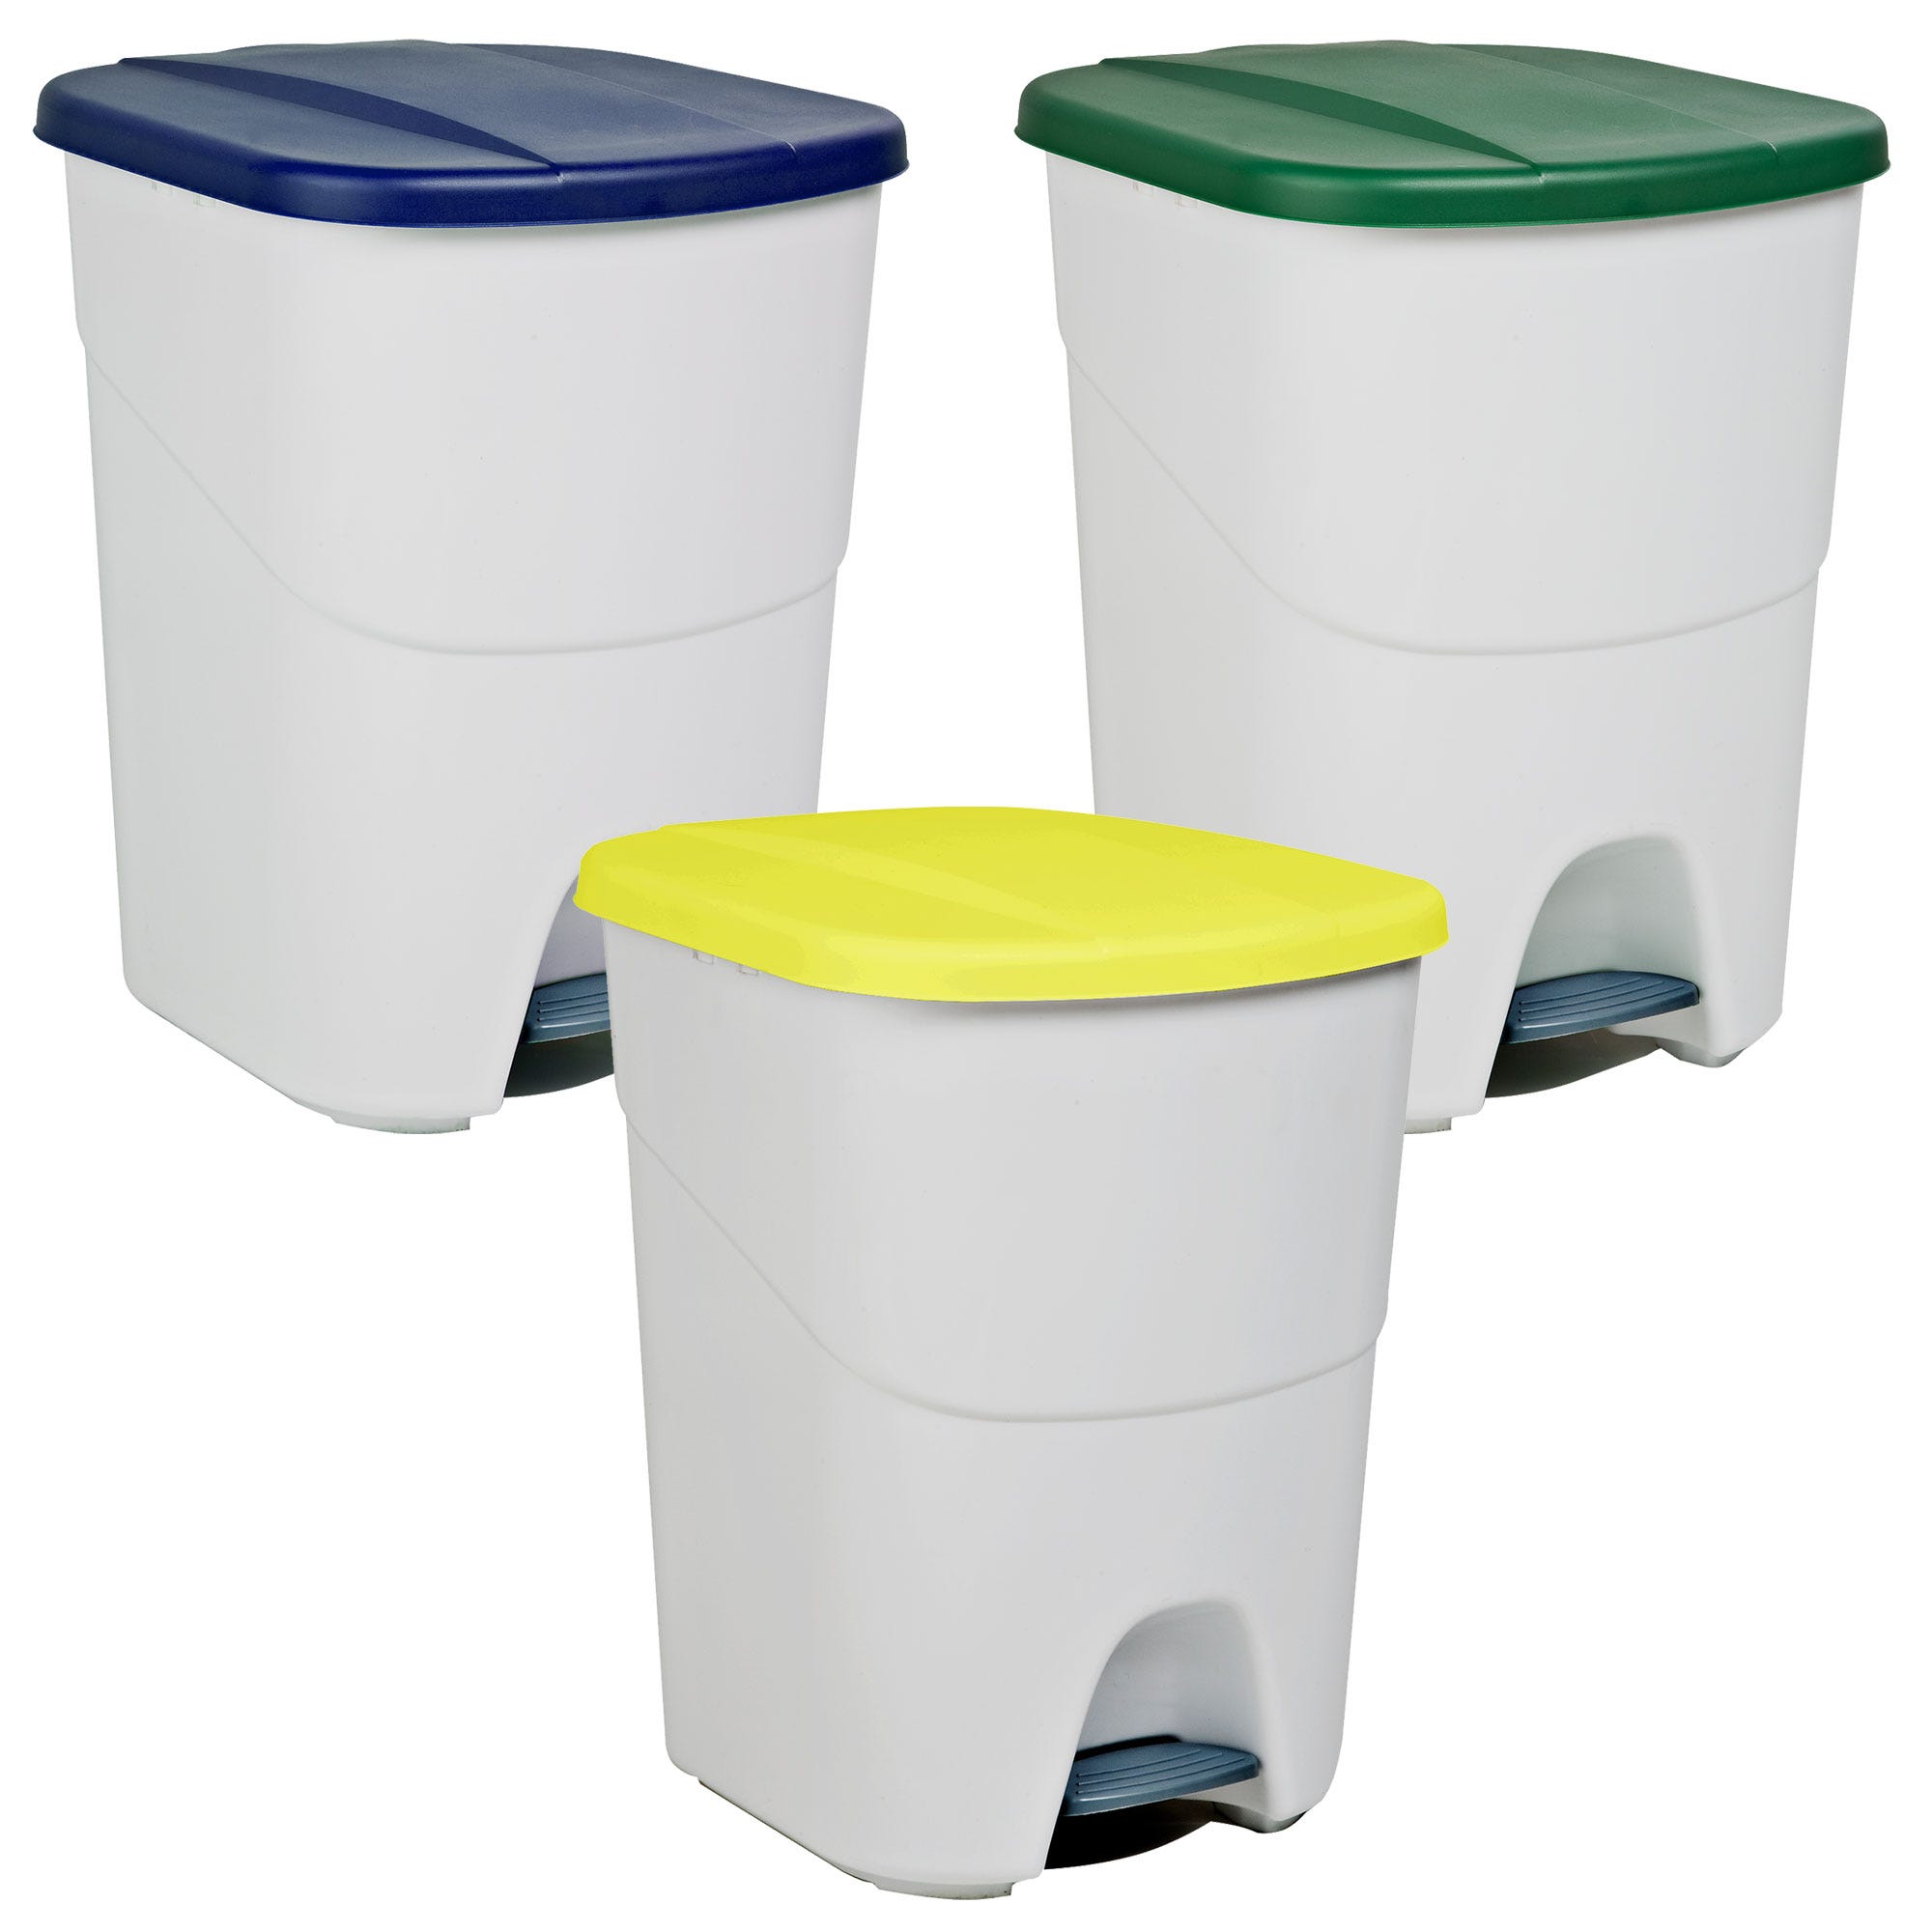 Pack reciclaje Pedalbin Ecológico: 3 Contenedores de 40 litros en colores.  Capacidad total 120 litros.